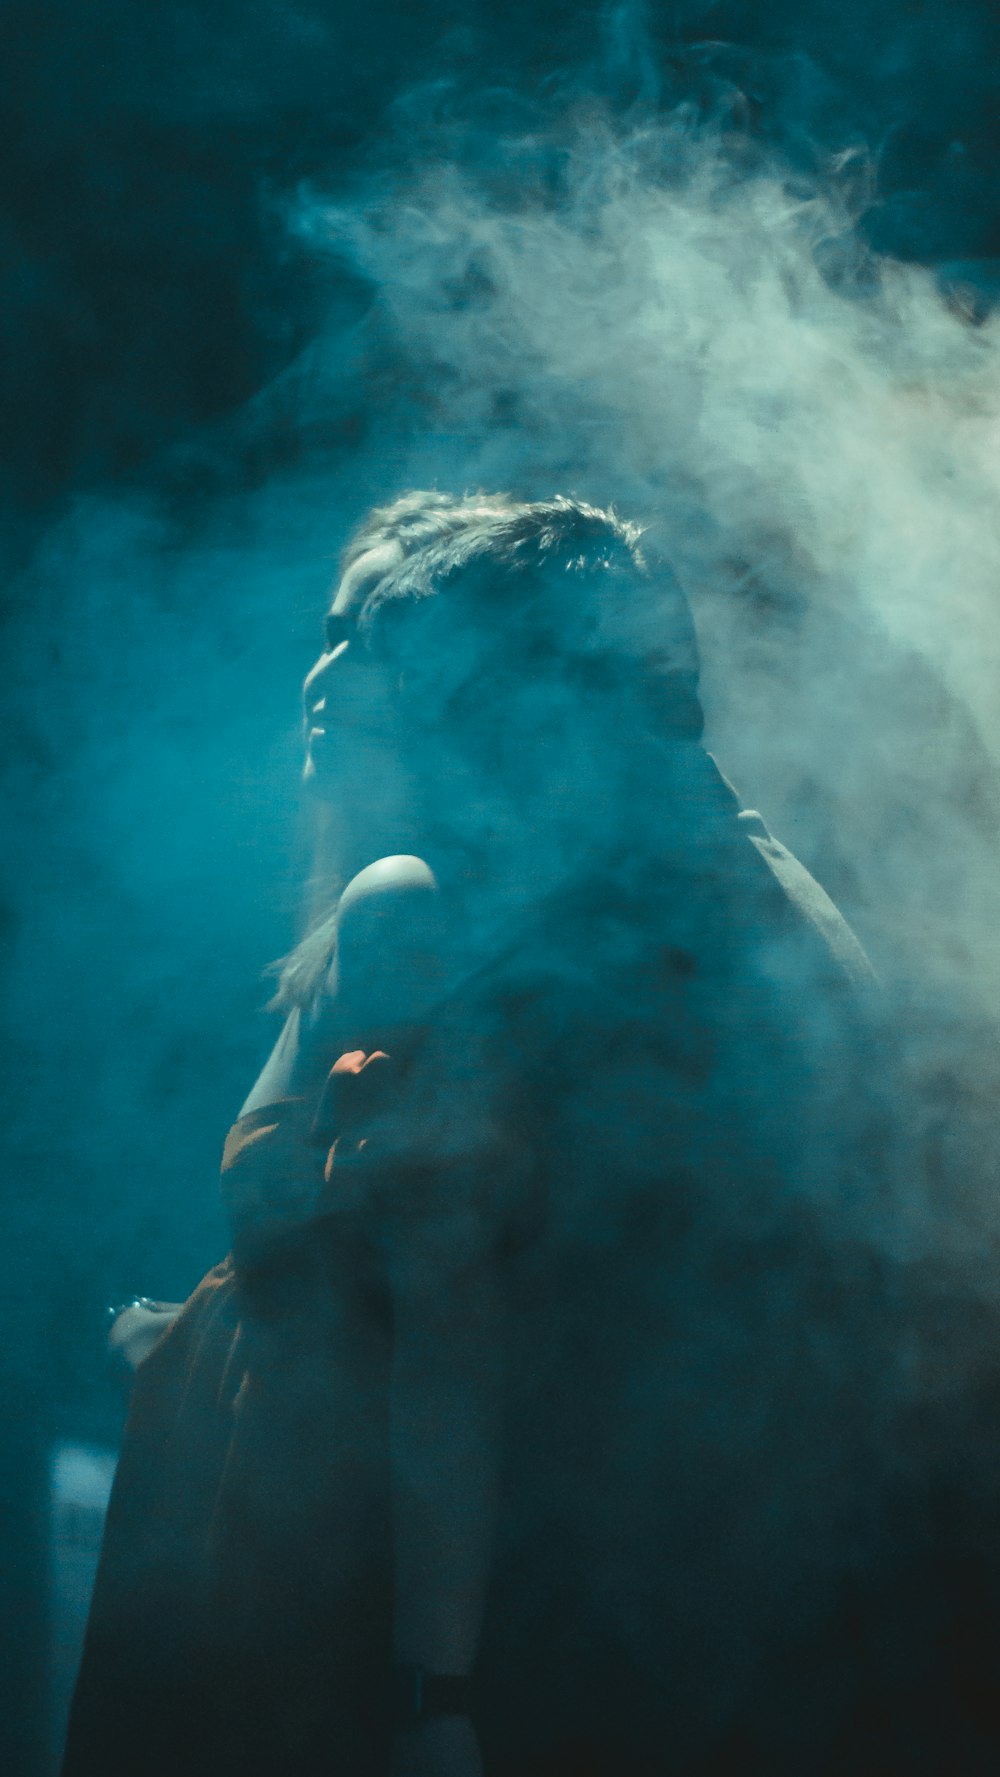 Una persona parada frente a una nube de humo